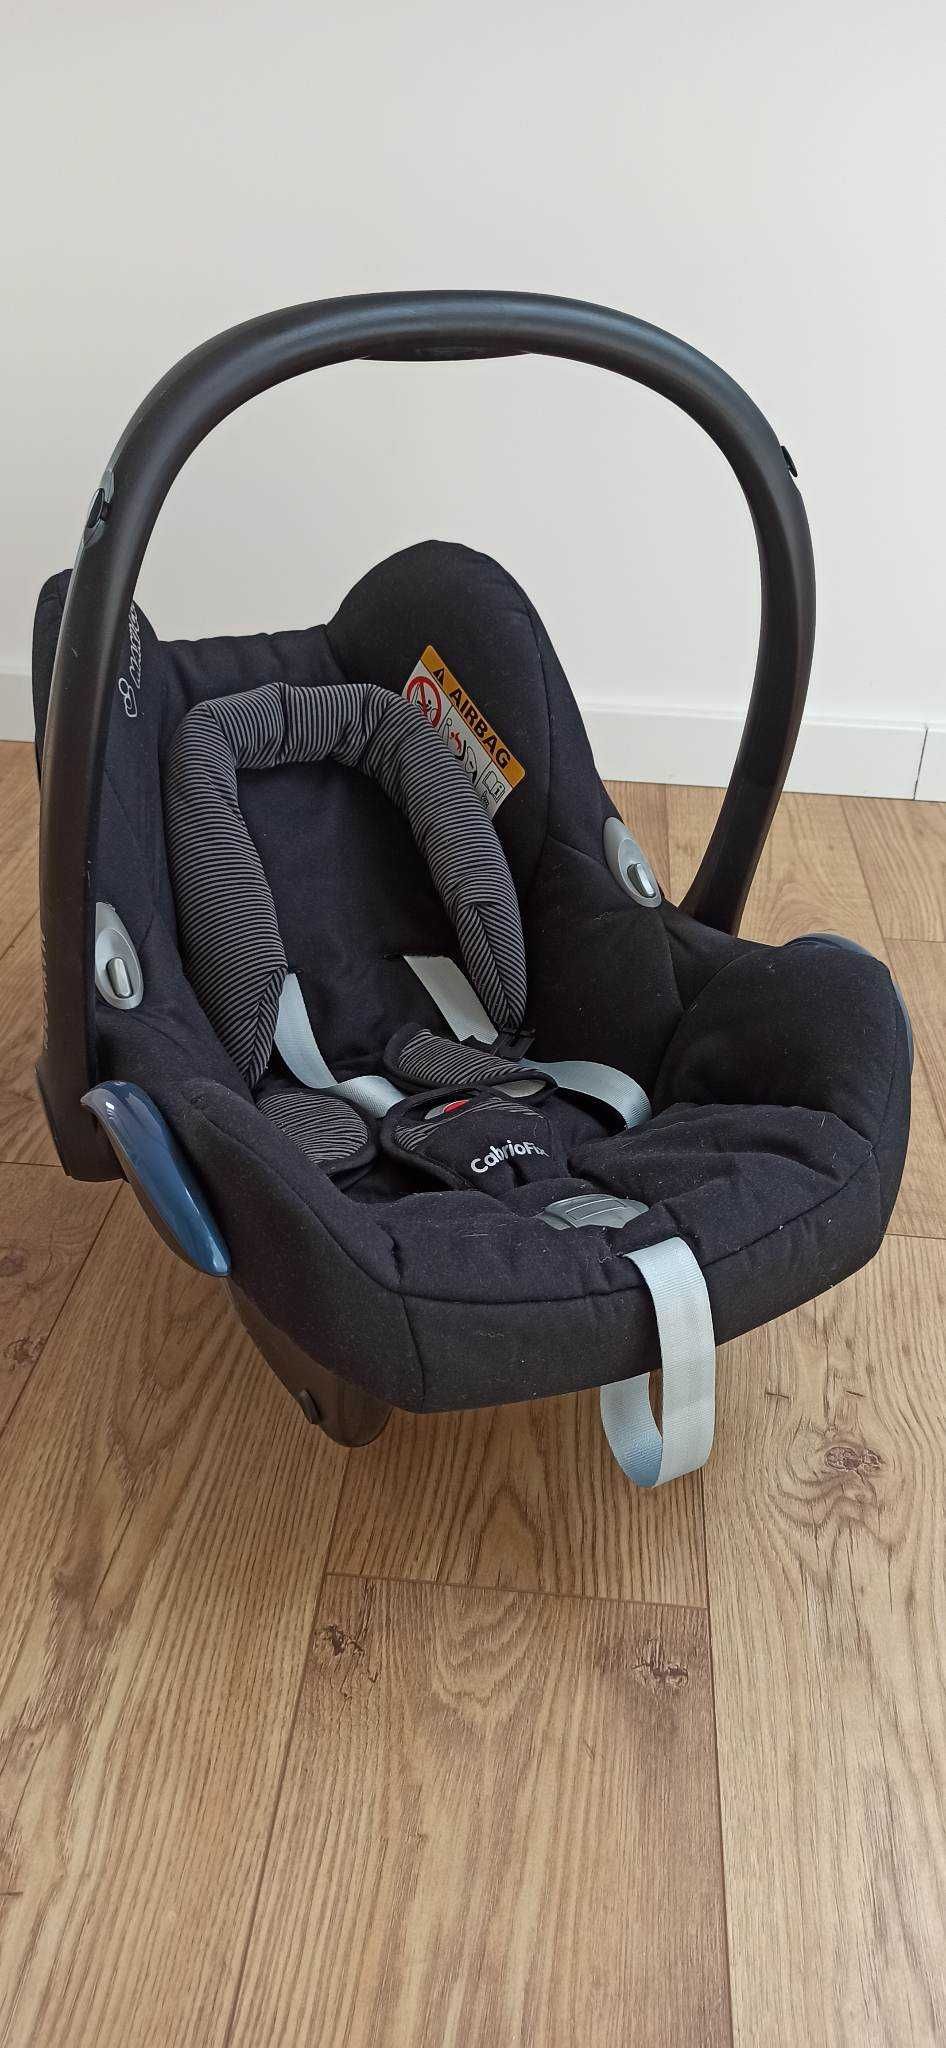 Czarny fotelik samochodowy MAXI COSI z wkładką dla noworodka